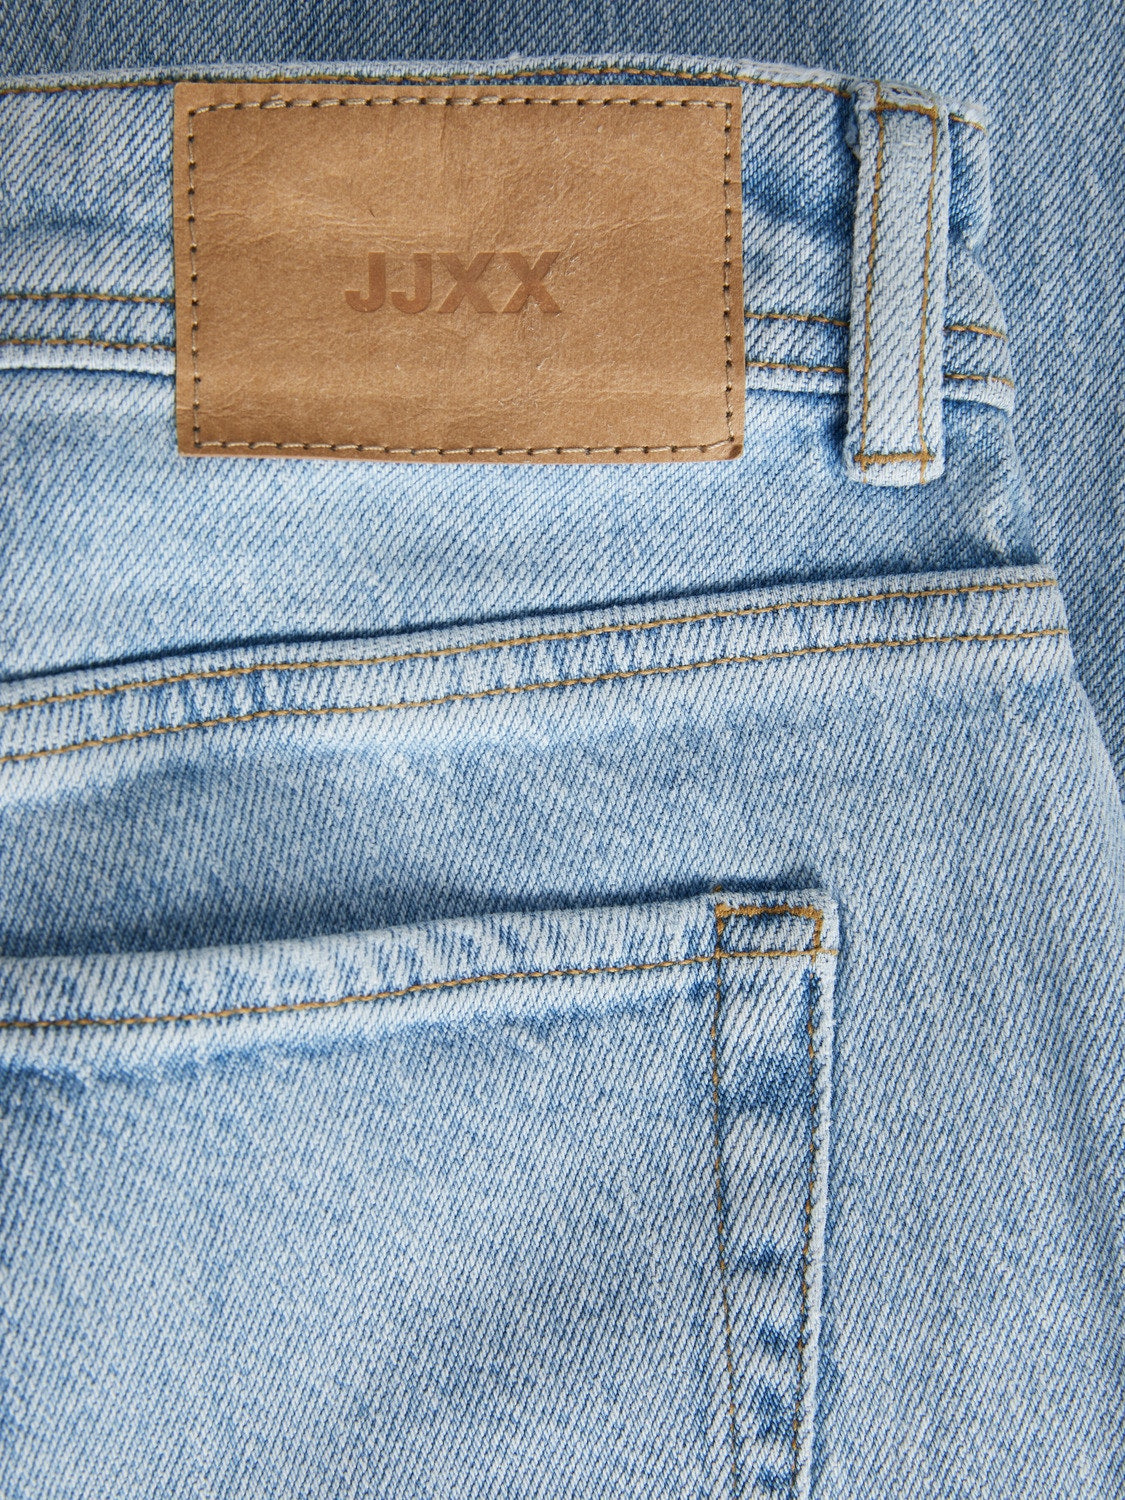 jeans-slim-taille-haute-berlin-jjxx-12203836-WOMEN-SLIM-DENIM-HIGH-WAIST-DM2-SHOP-06